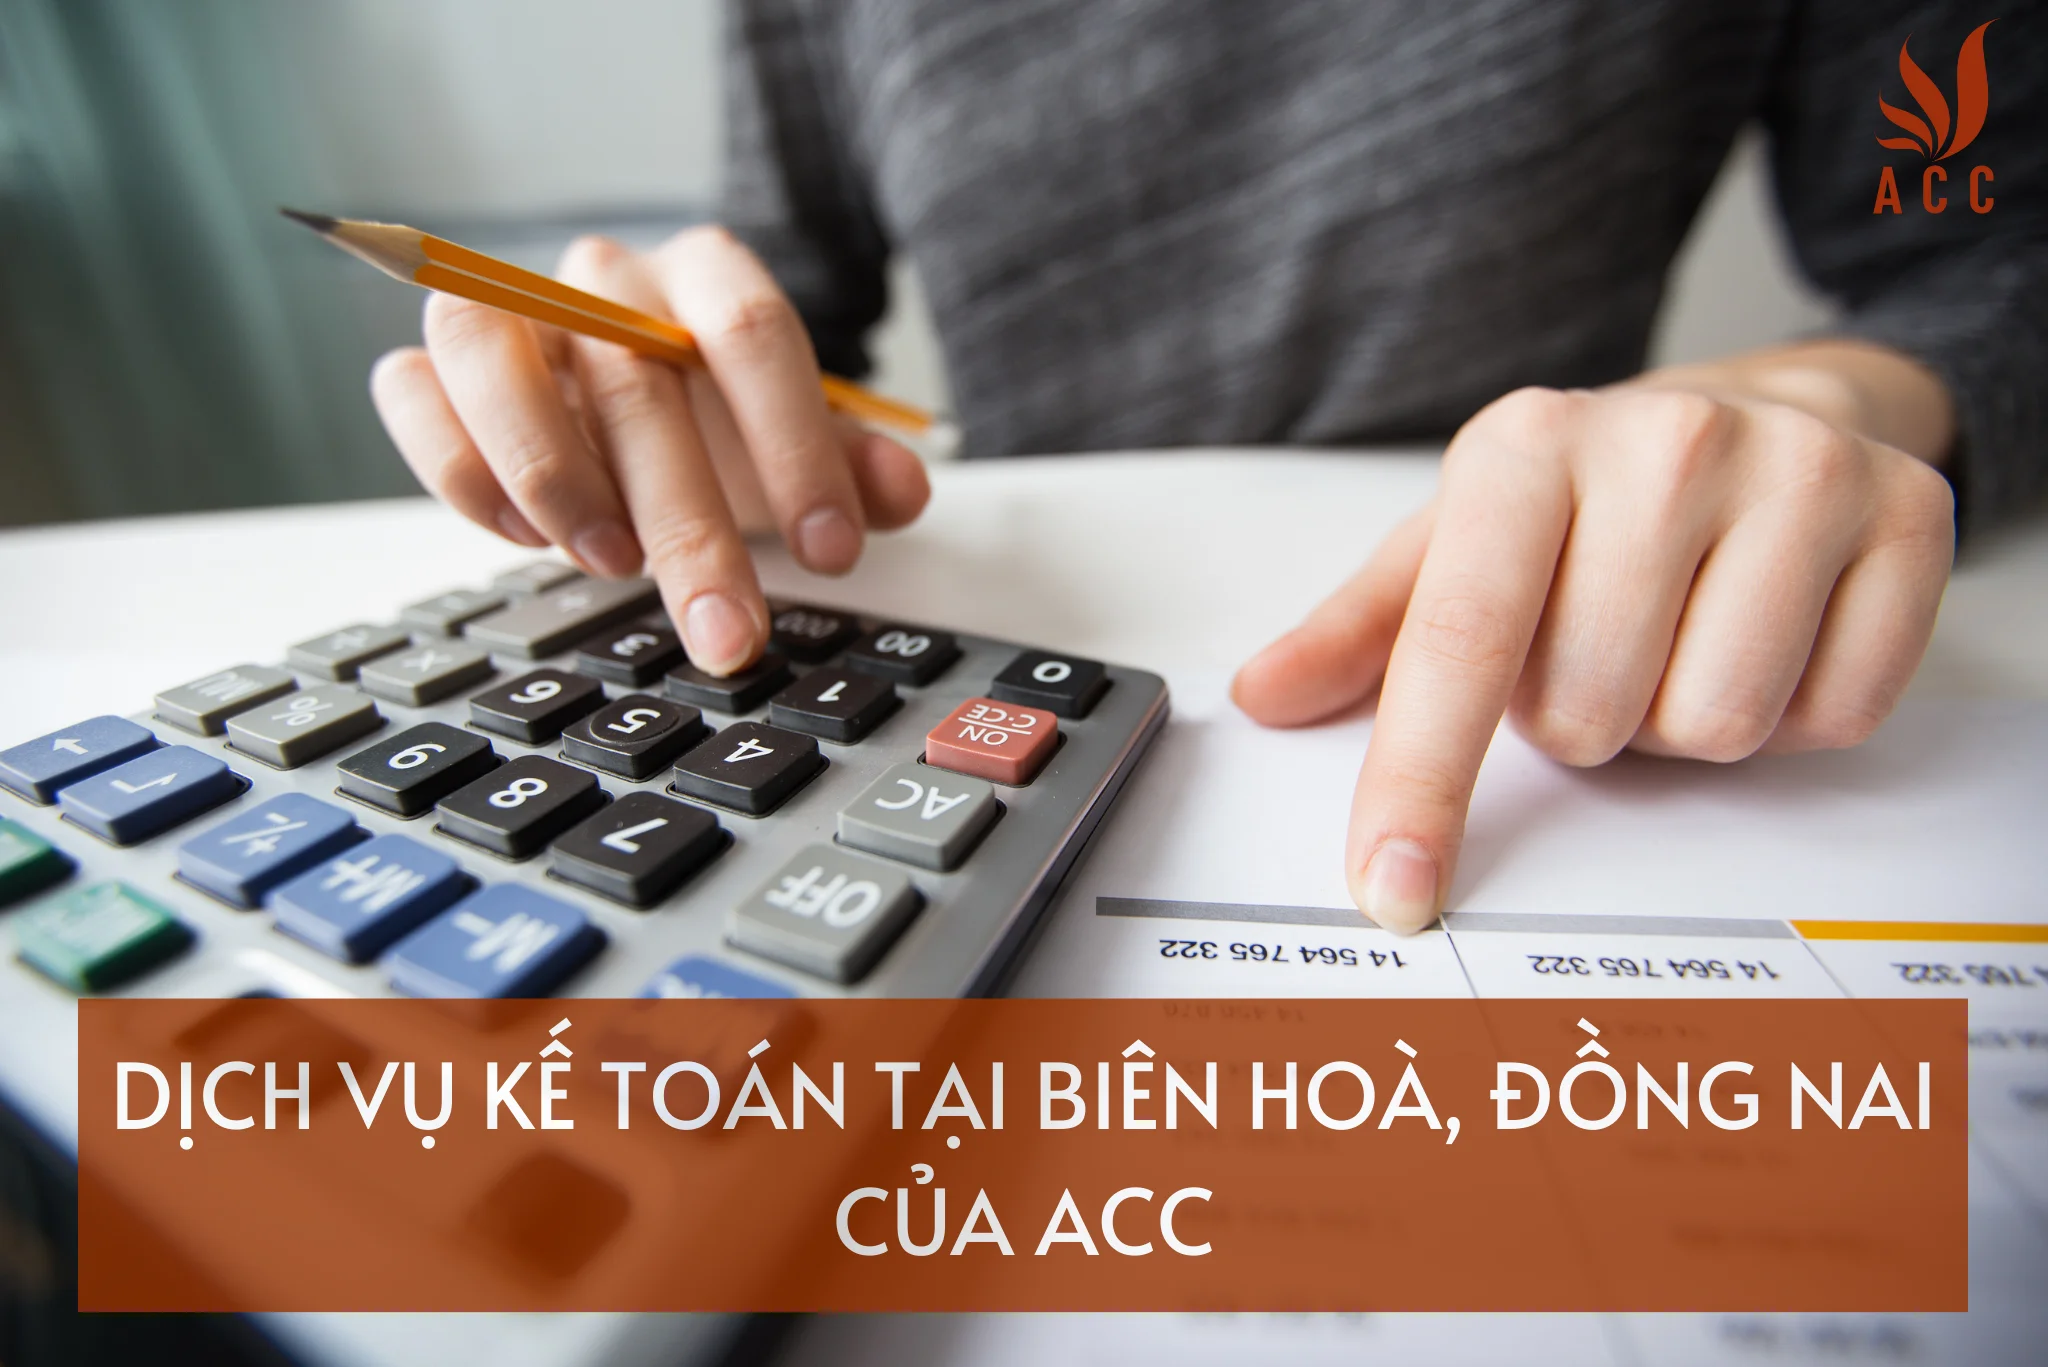 ACC sẽ tư vấn cho bạn về các chiến lược giảm thiểu chi phí thuế hợp pháp và đáp ứng các yêu cầu của pháp luật thuế để giúp bạn giảm thiểu chi phí thuế của doanh nghiệp.